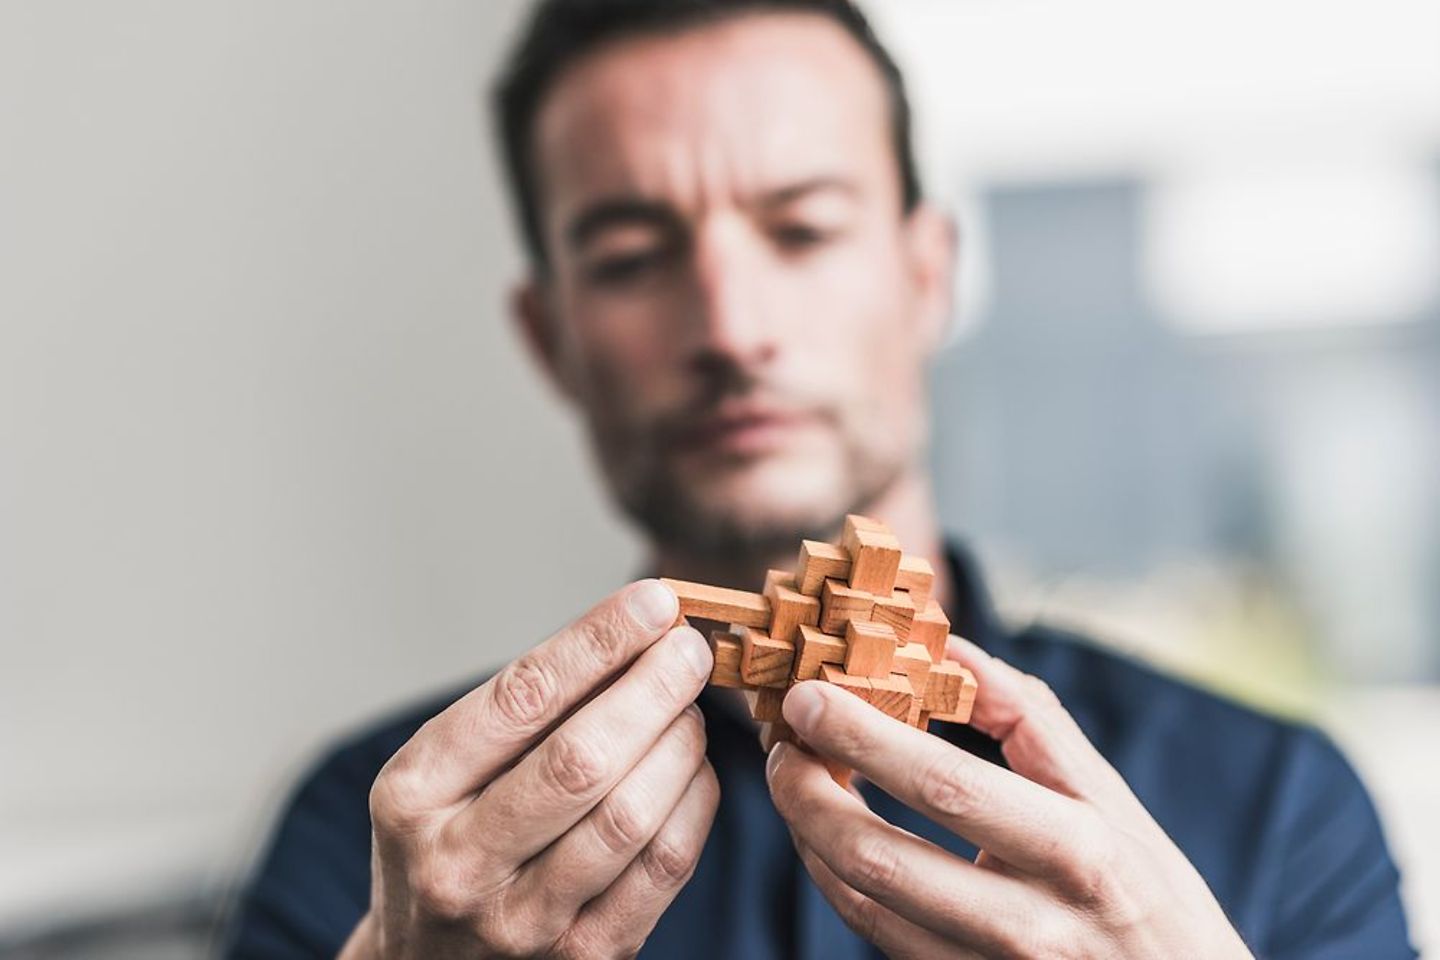  Un homme assemble un cube en bois – délicat, tout comme obtenir une IA conforme à la loi